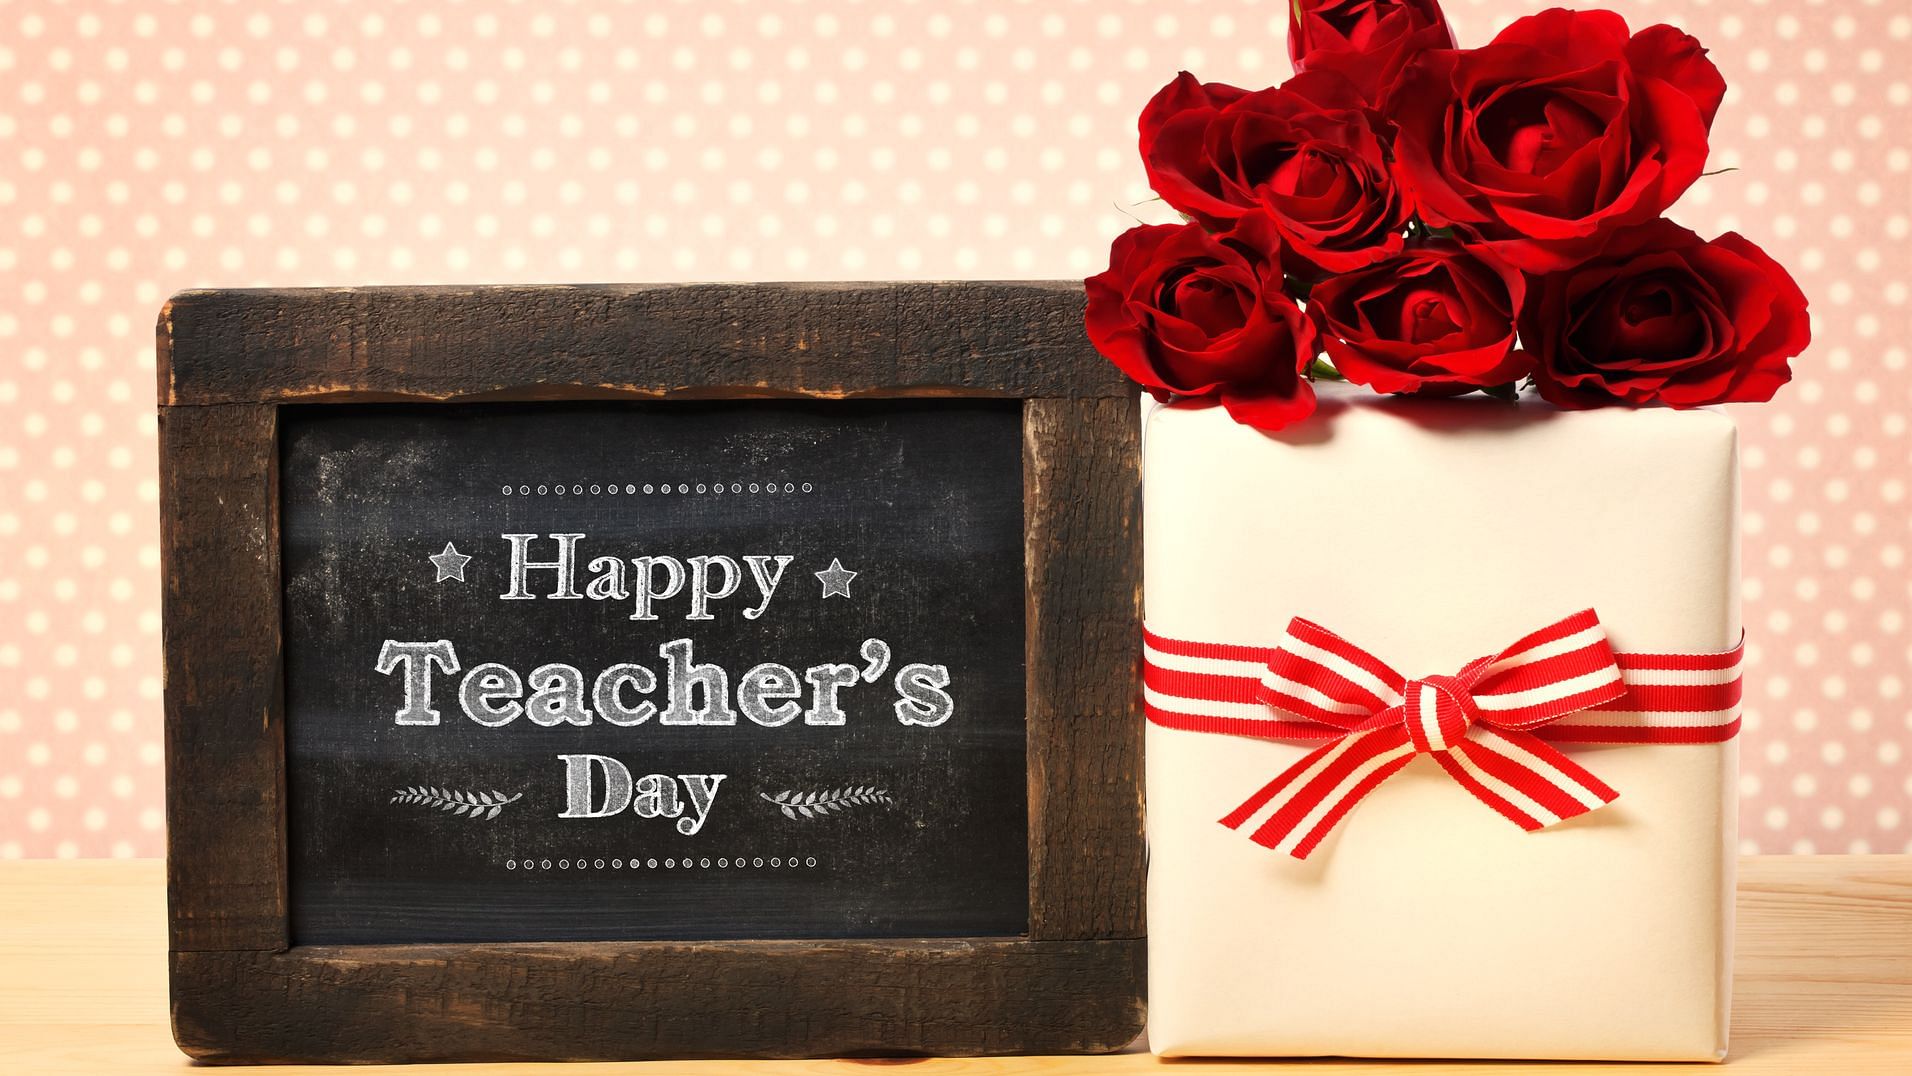 <div class="paragraphs"><p>Happy Teachers' Day Gift Ideas</p></div>